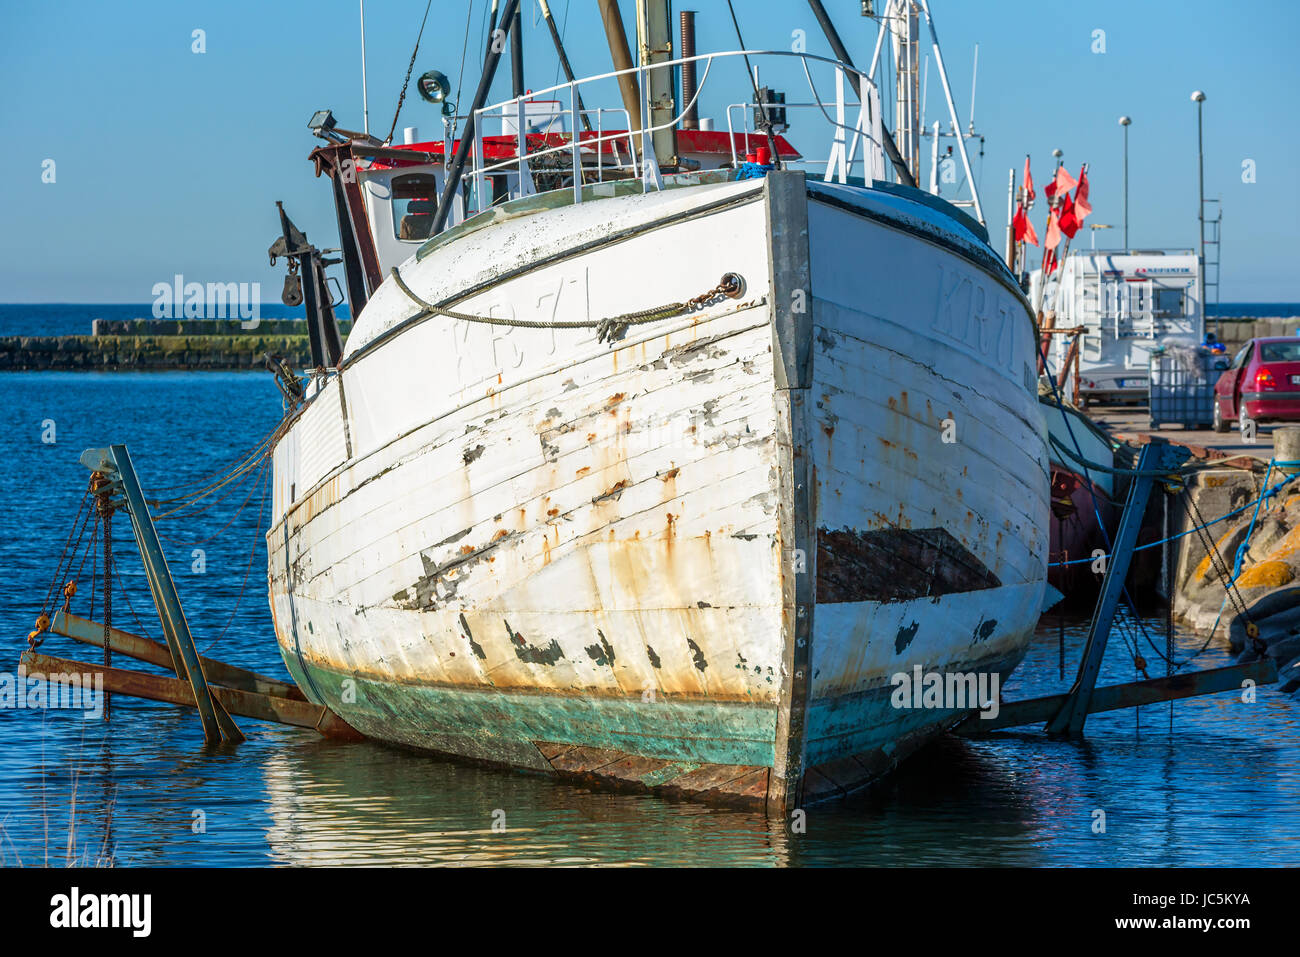 Gronhogen Oland, Sweden - 28 mai 2017 : l'environnement documentaire. Gros plan du bateau de pêche à mi-hauteur de la quille une rampe de lancement à marina pour les réparations ou ami Banque D'Images